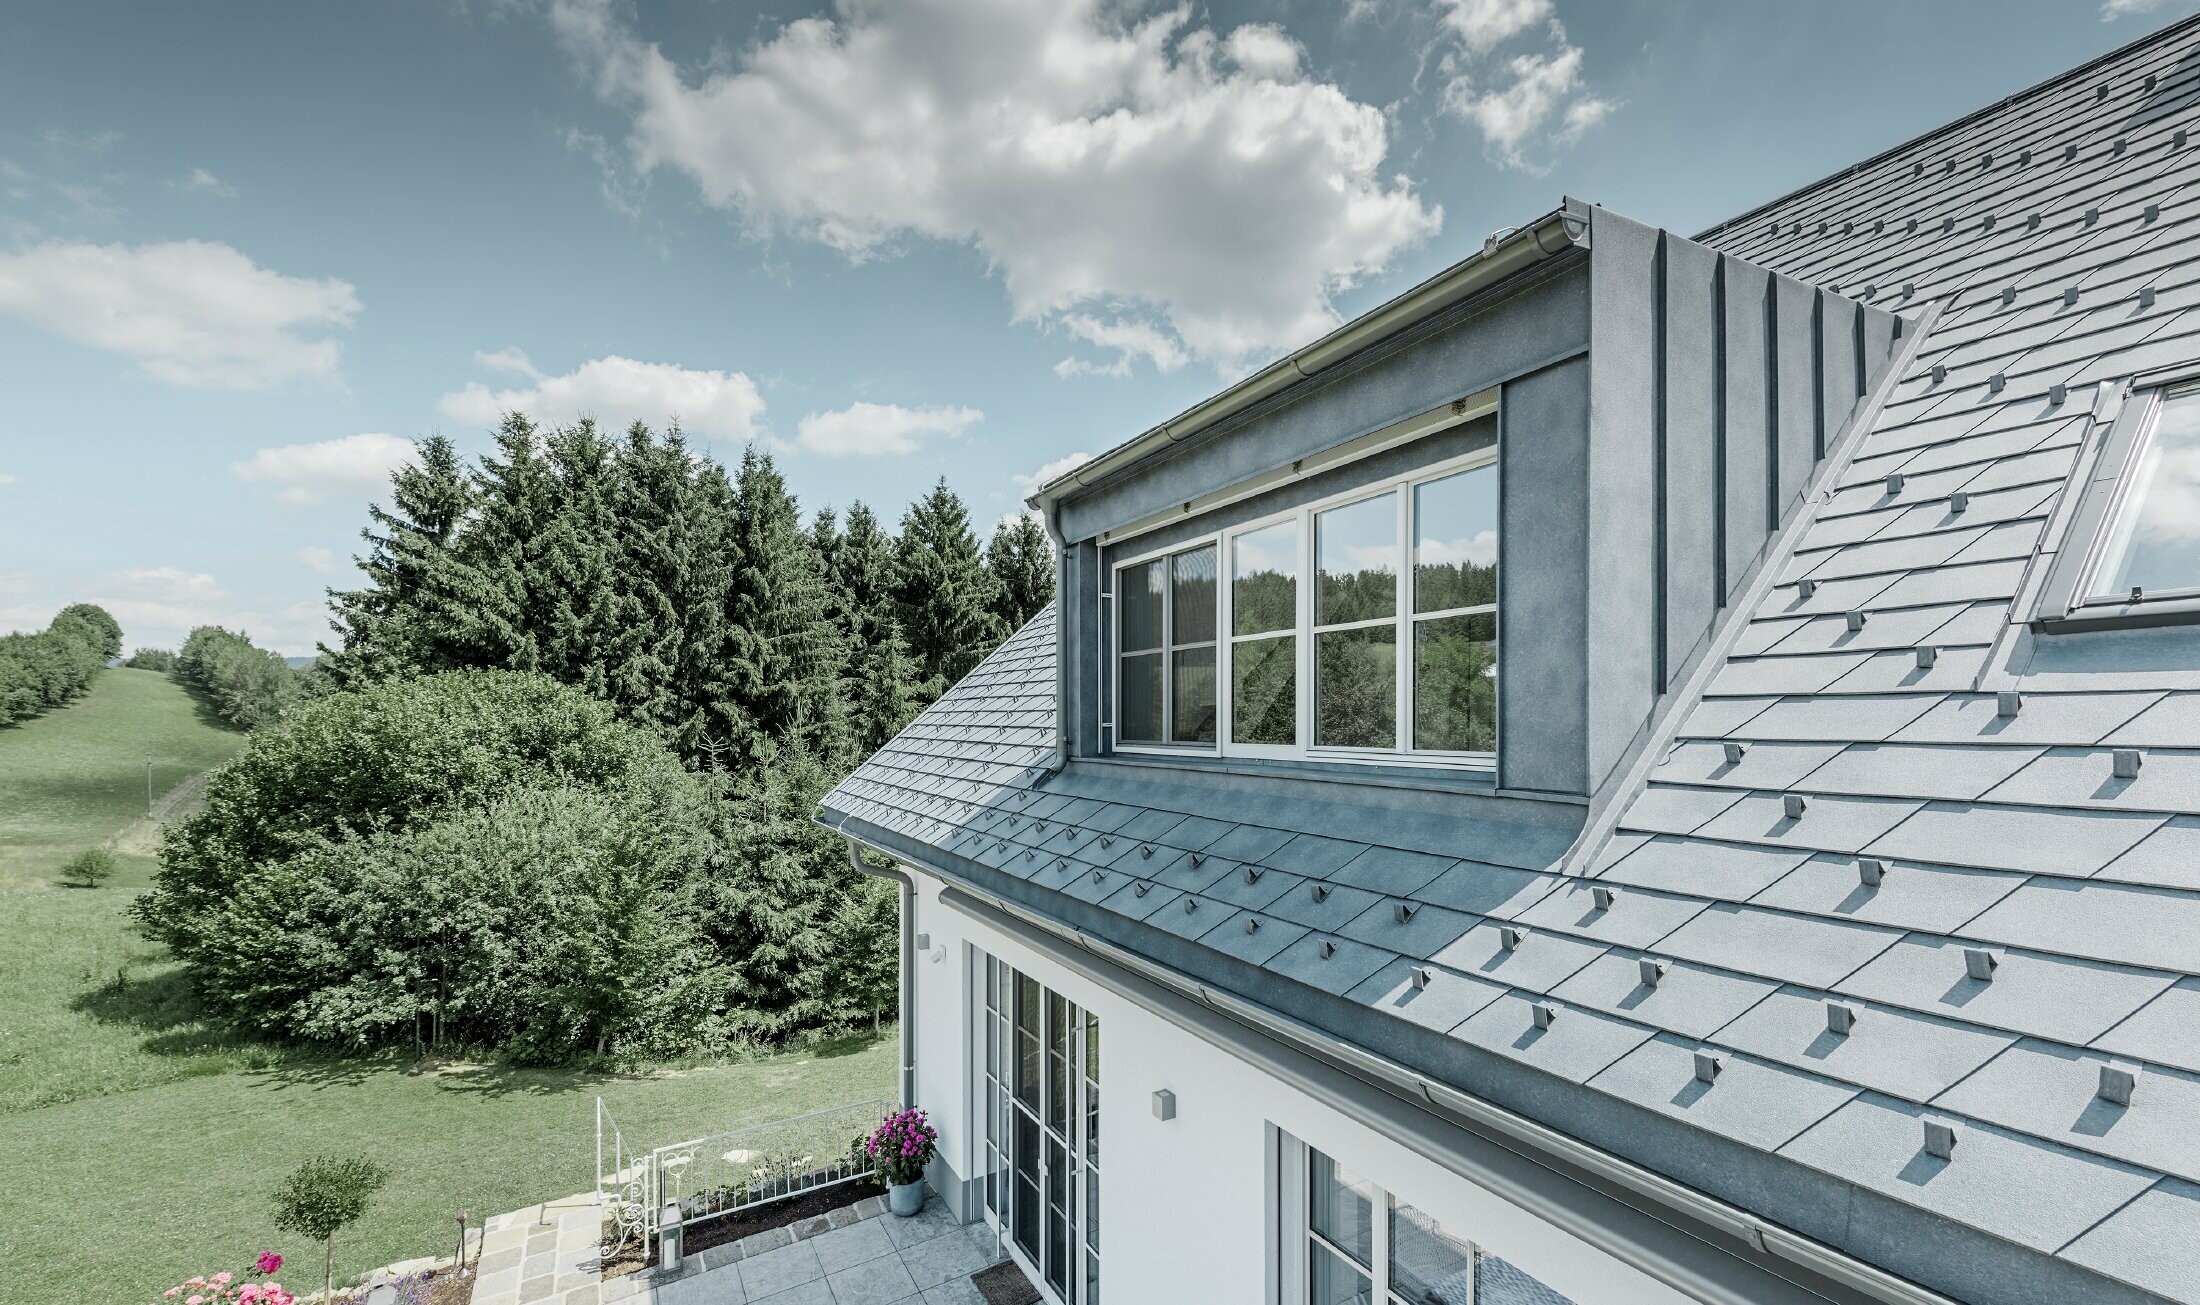 Rückansicht des neu sanierten Bauernhauses mit der PREFA Dachschindel in Steingrau.